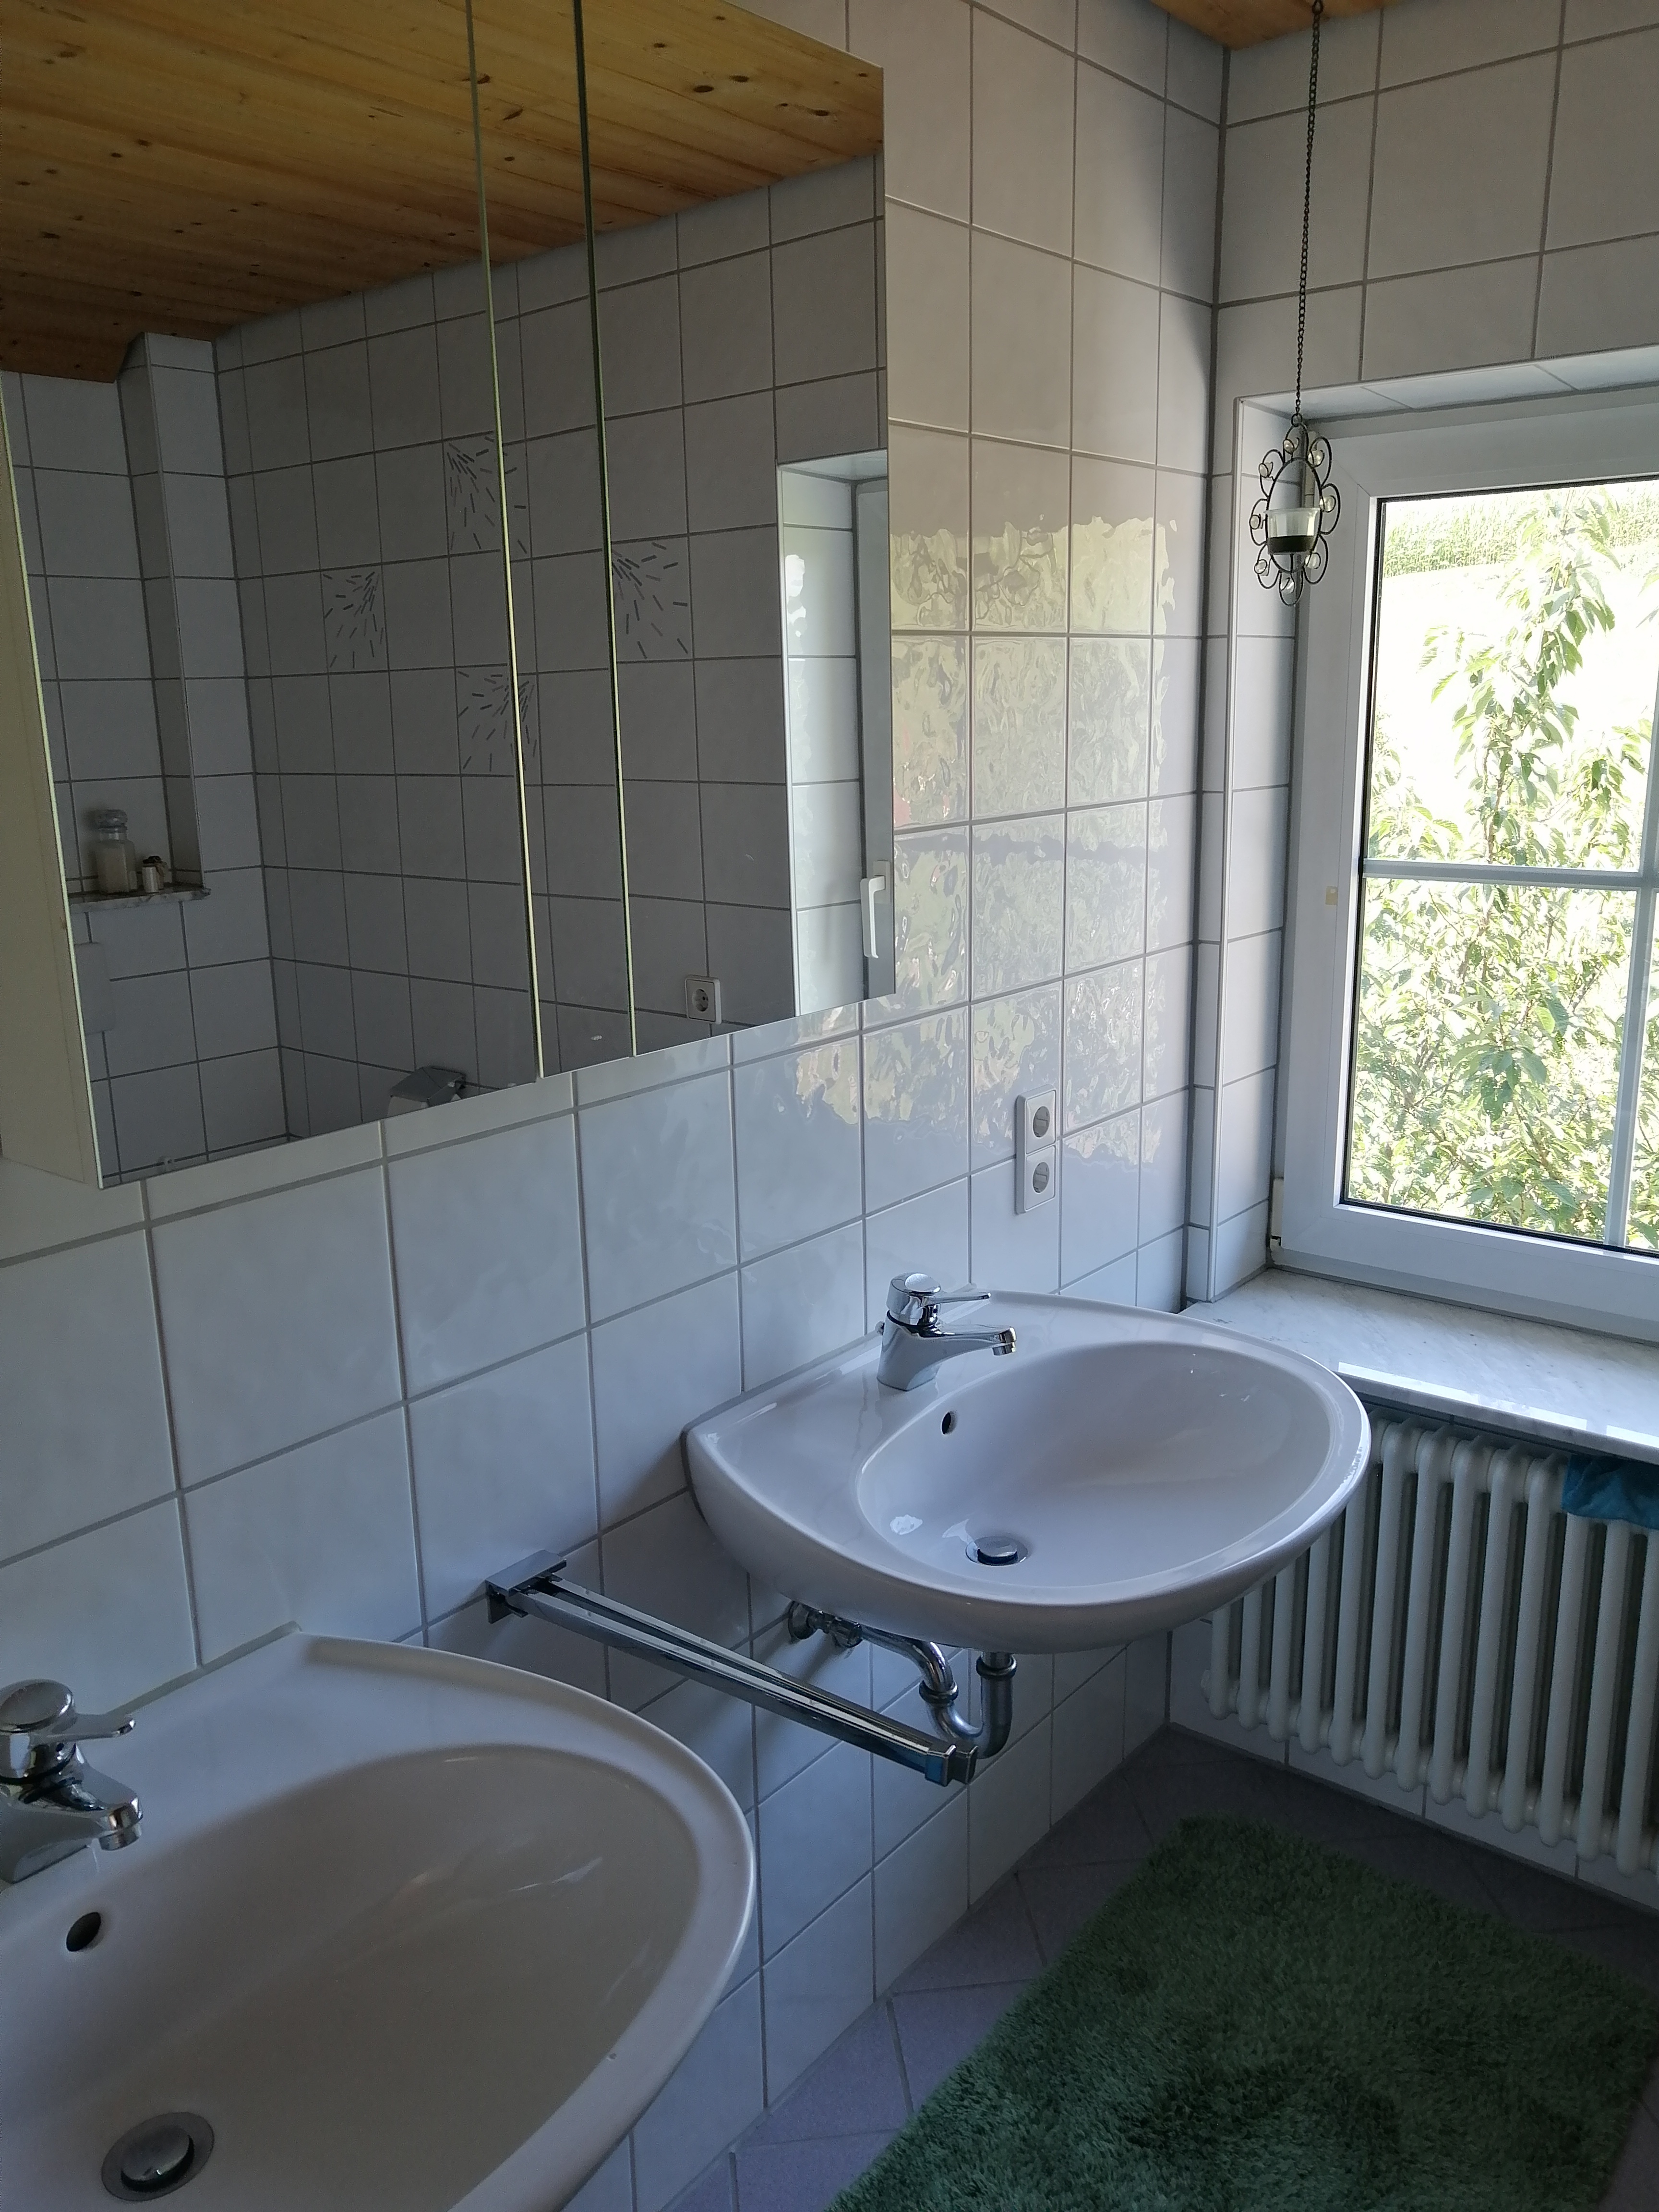  Badezimmer mit zwei Waschbecken-Bild wird mit Klick vergrößert 